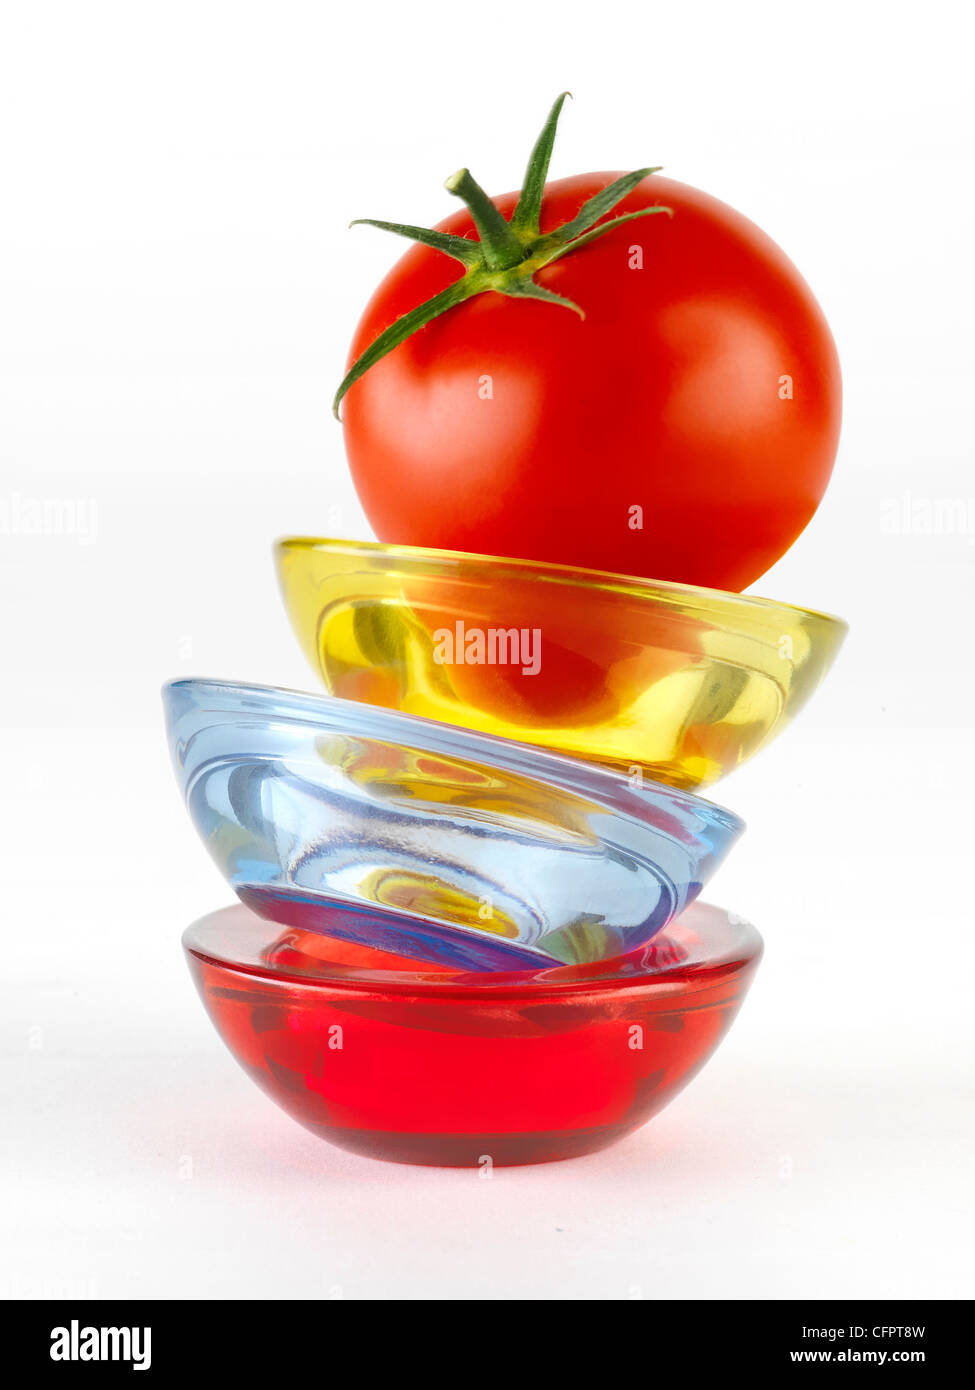 Funny tomato picture Stock Photo